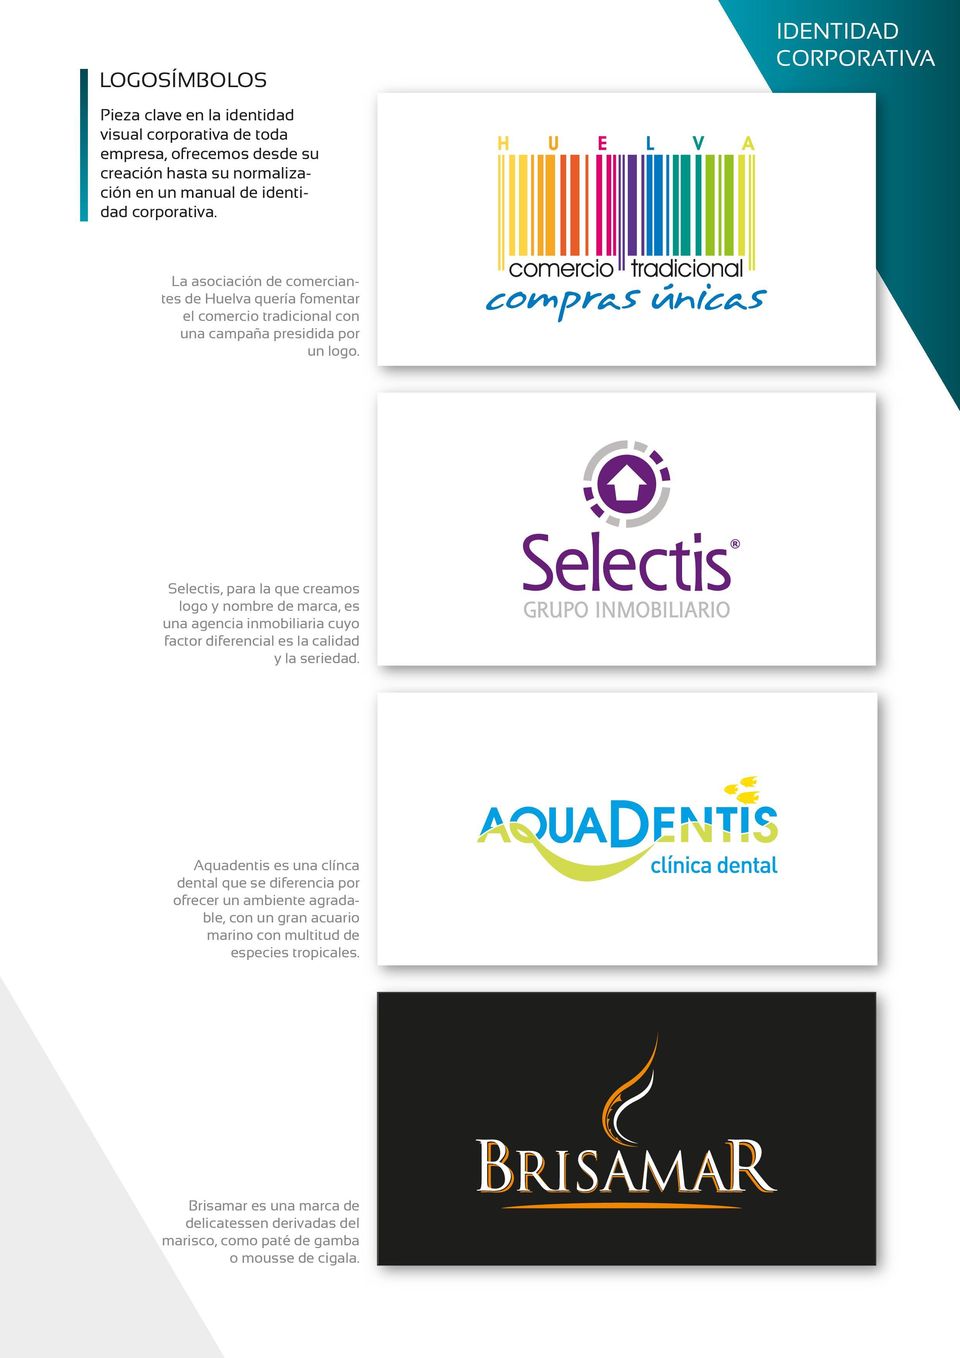 Selectis, para la que creamos logo y nombre de marca, es una agencia inmobiliaria cuyo factor diferencial es la calidad y la seriedad.